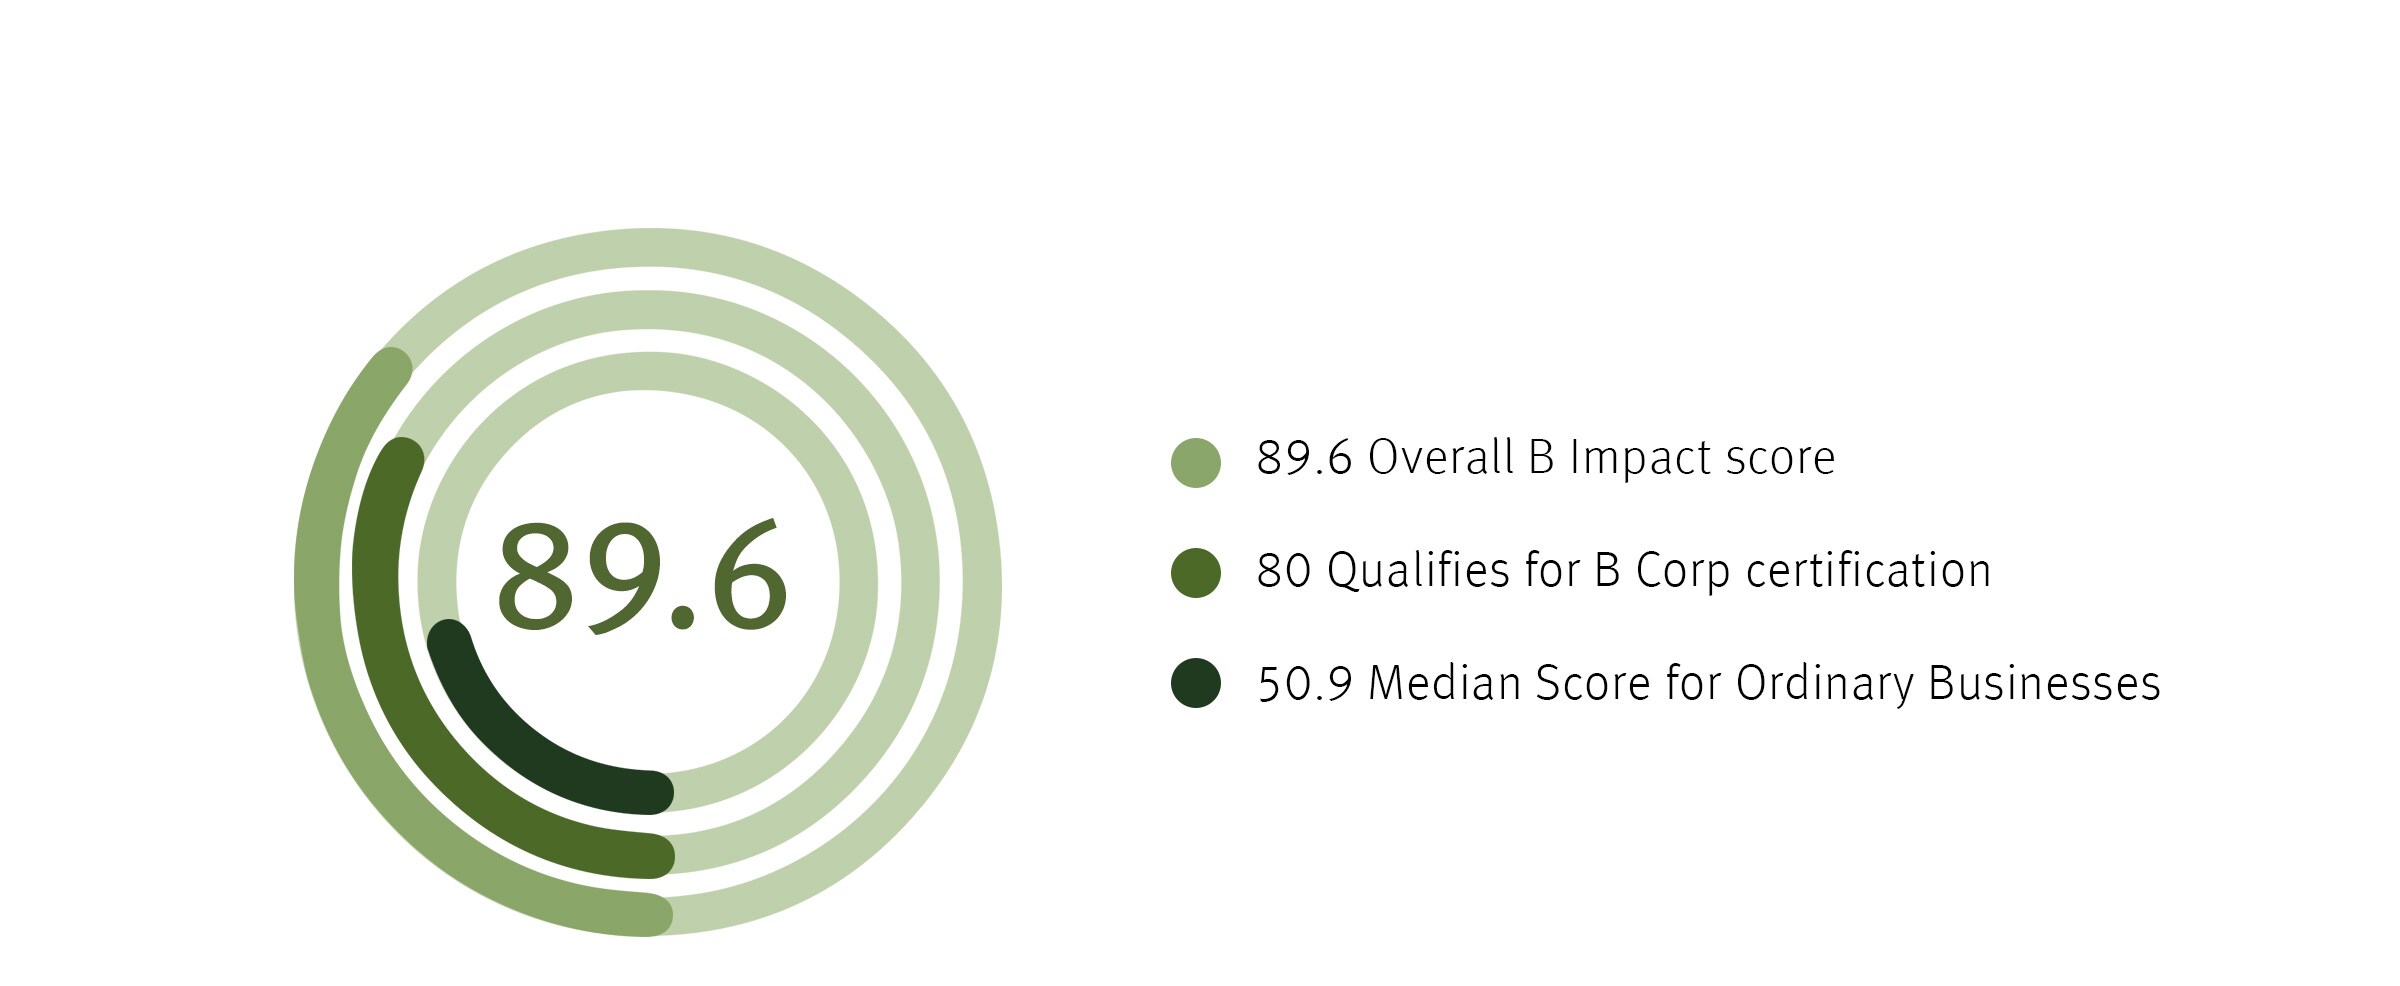 Aveda's gesamter B Impact Score ist 89.6